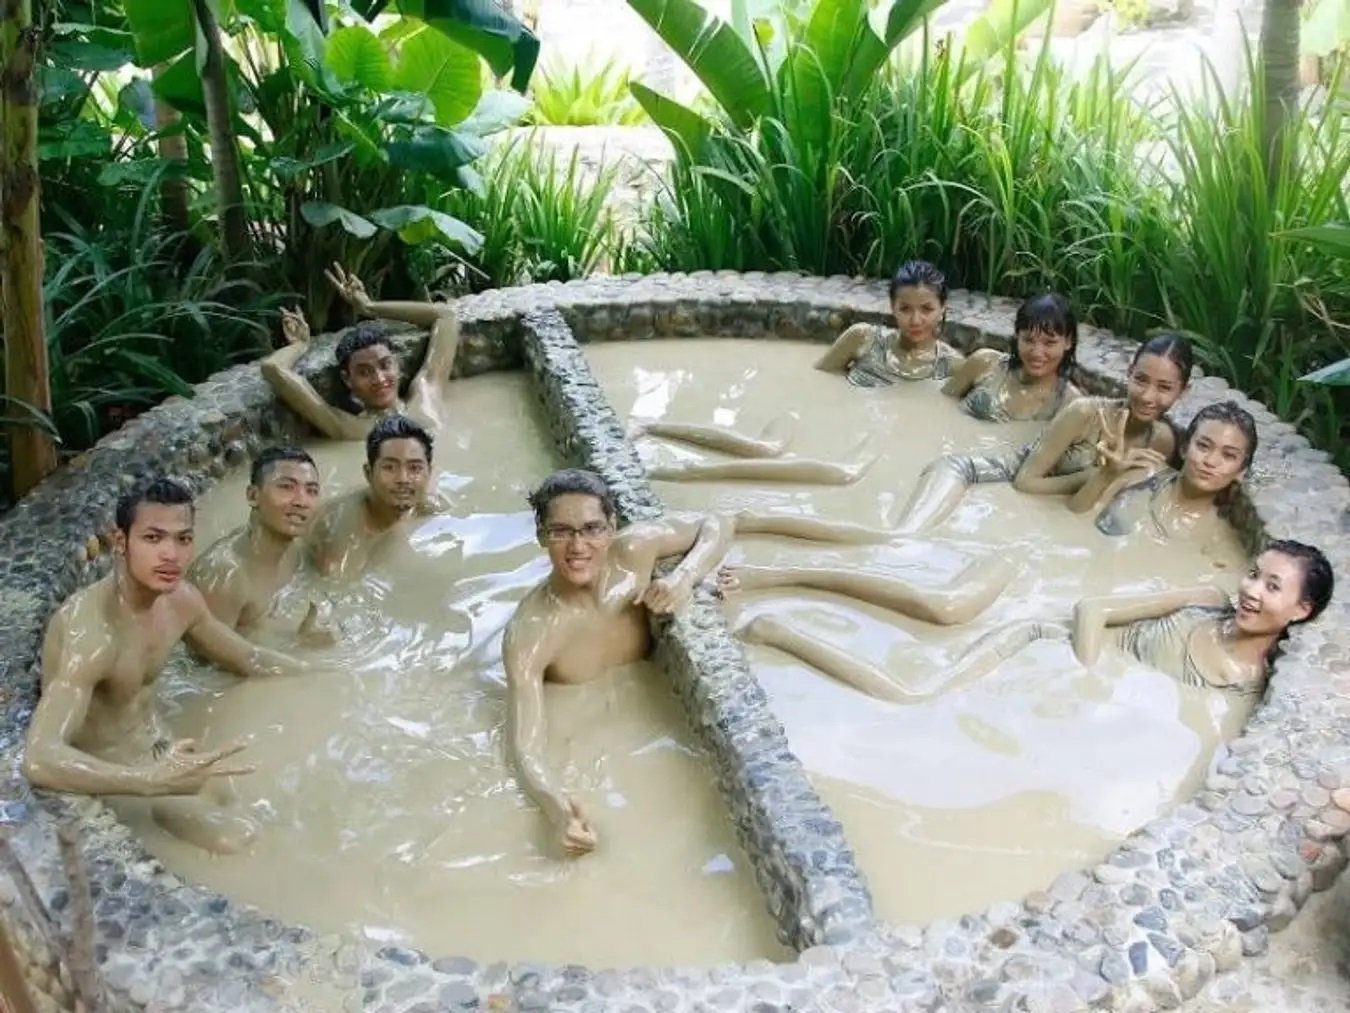 Mud bath in Vietnam